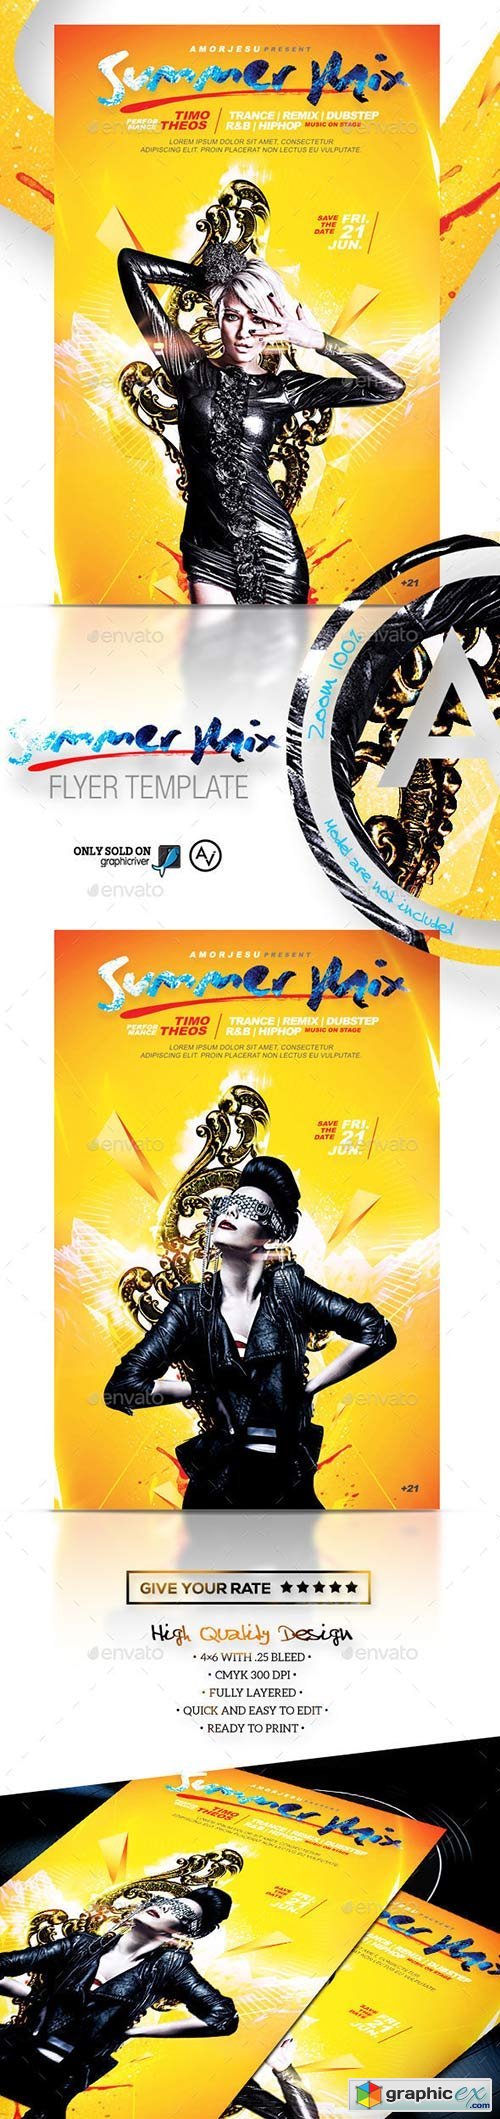 Summer Mix Flyer Template